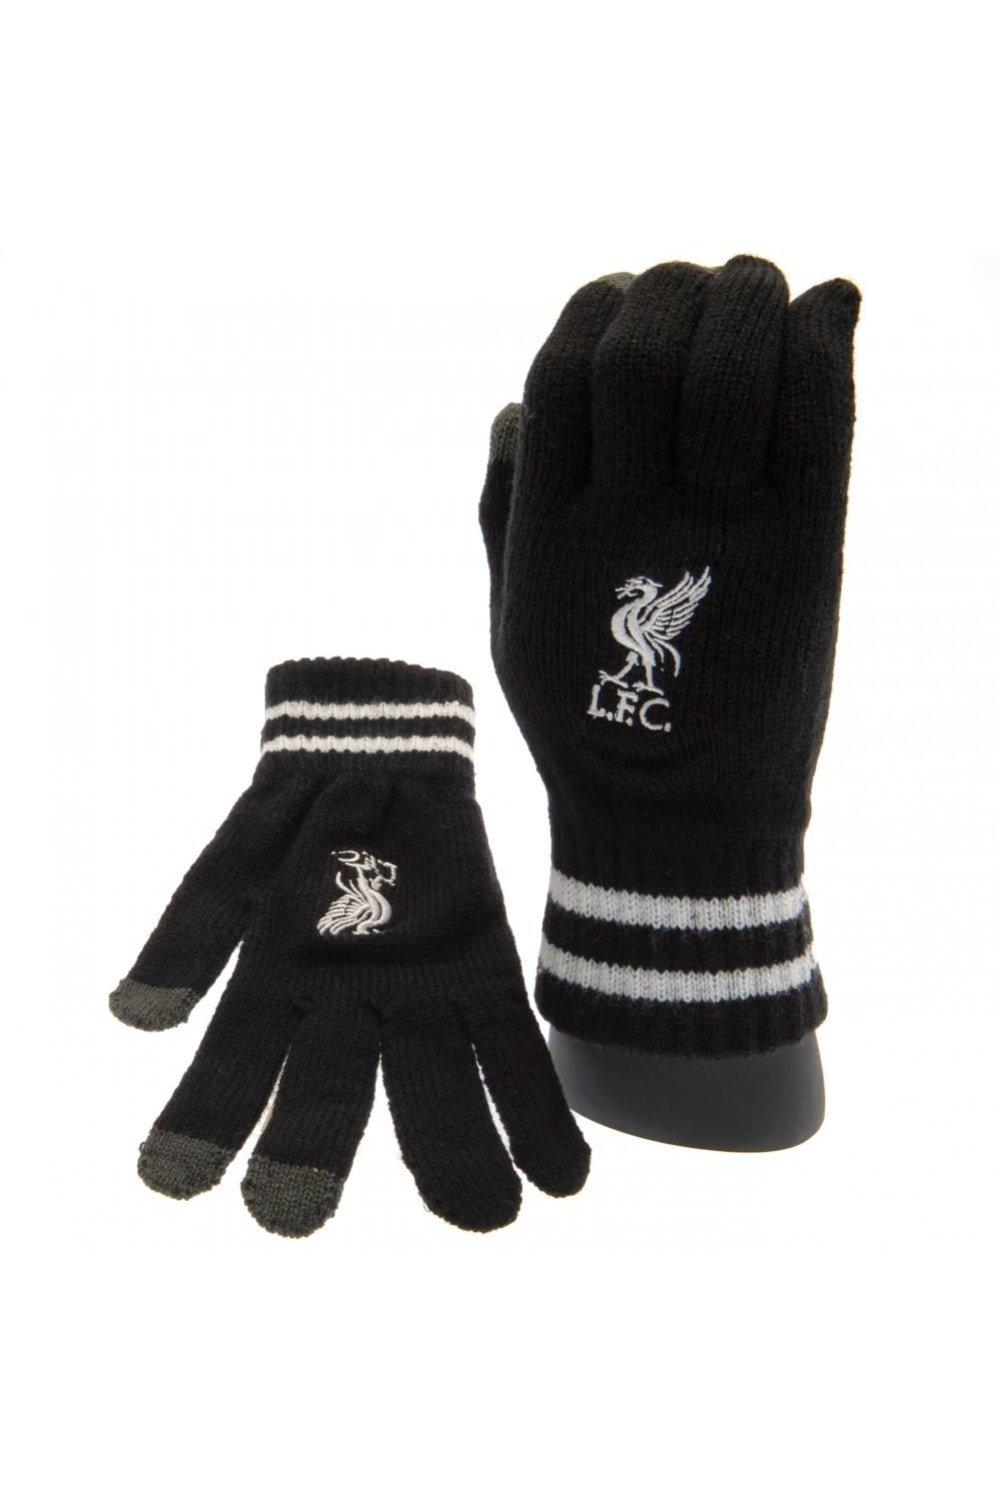 Вязаные перчатки Crest Touch Liverpool FC, черный